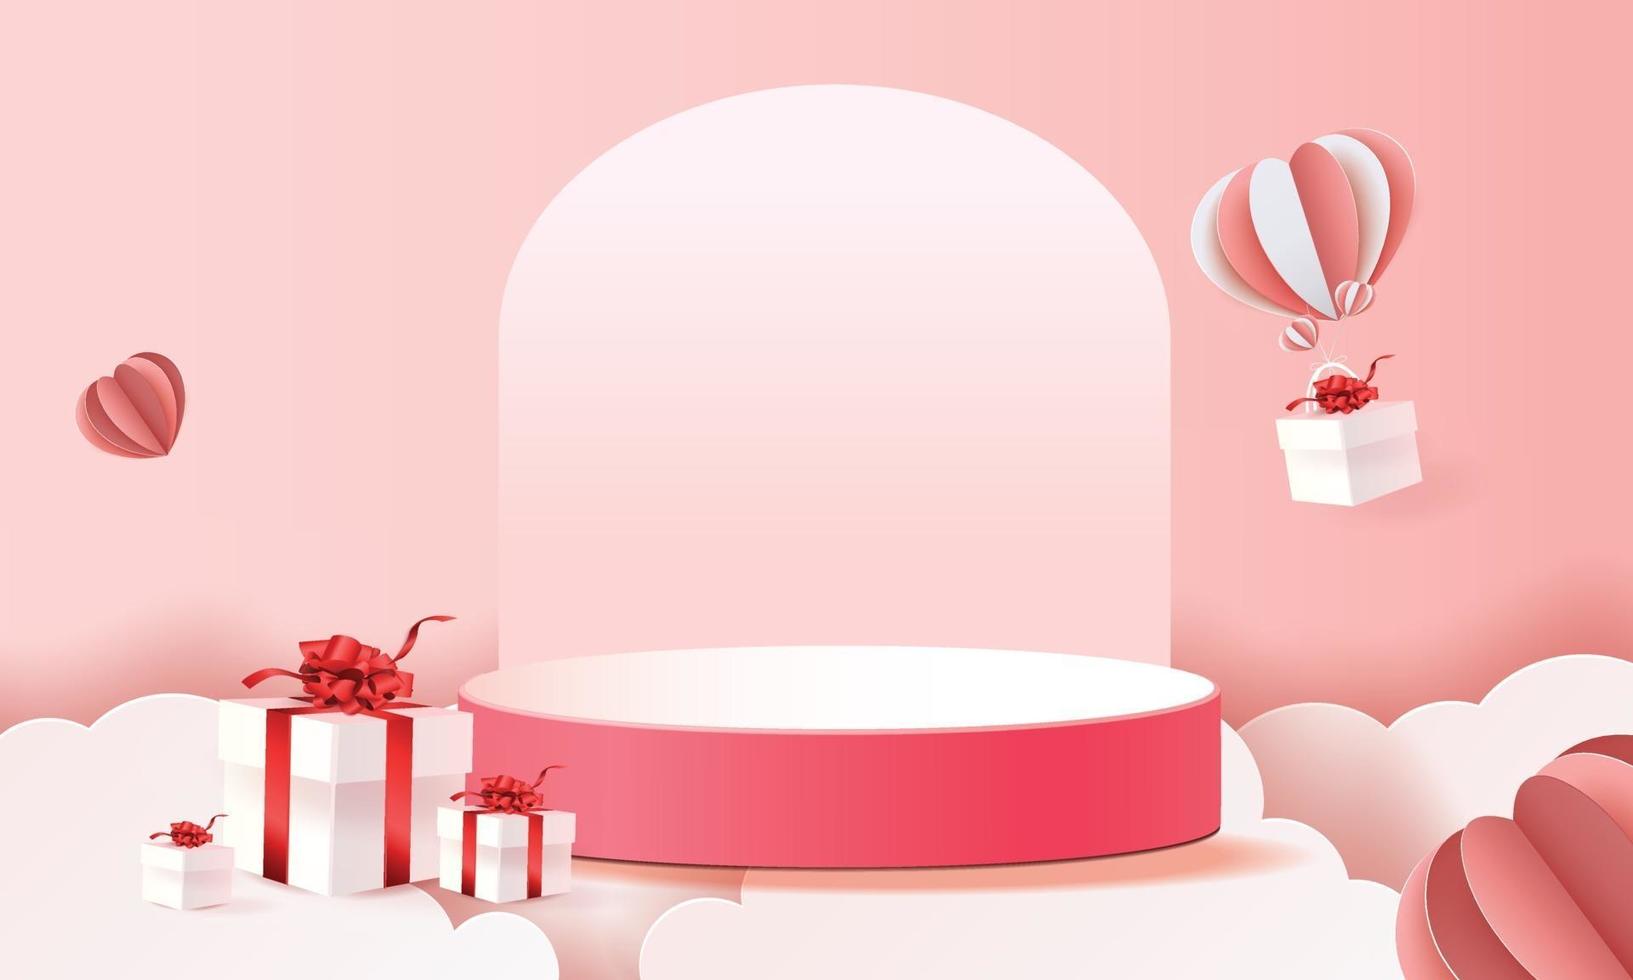 3d papier kunstpodium in wolken voor Valentijnsdag met hartjes en geschenken vector